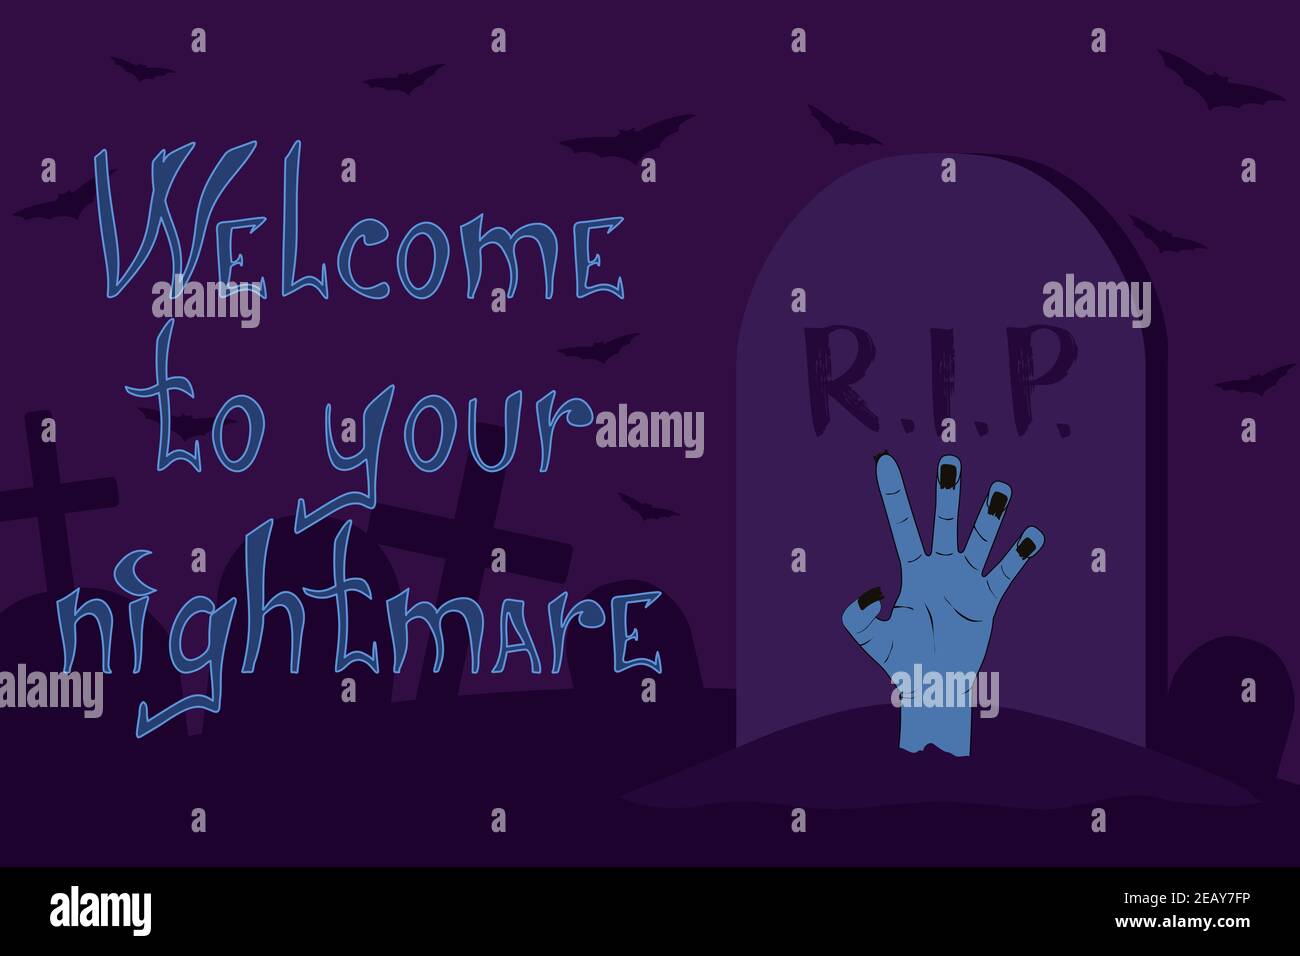 Willkommen zu deiner Albtraum halloween Illustration Stock Vektor